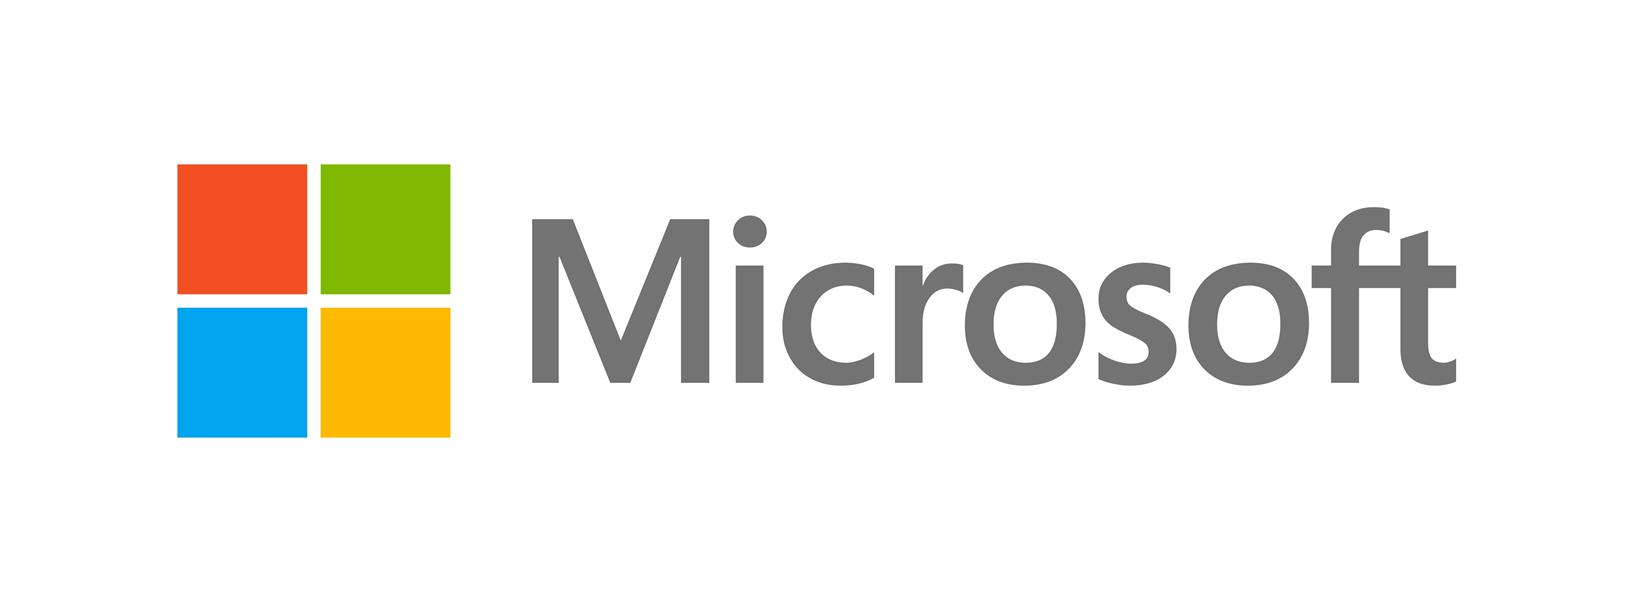 Microsoft Office Home and Business 2019 Word Excel Powerpoint Outlook - ESD pre-owned - 1 user - activeer met code activeren binnen 1 maand